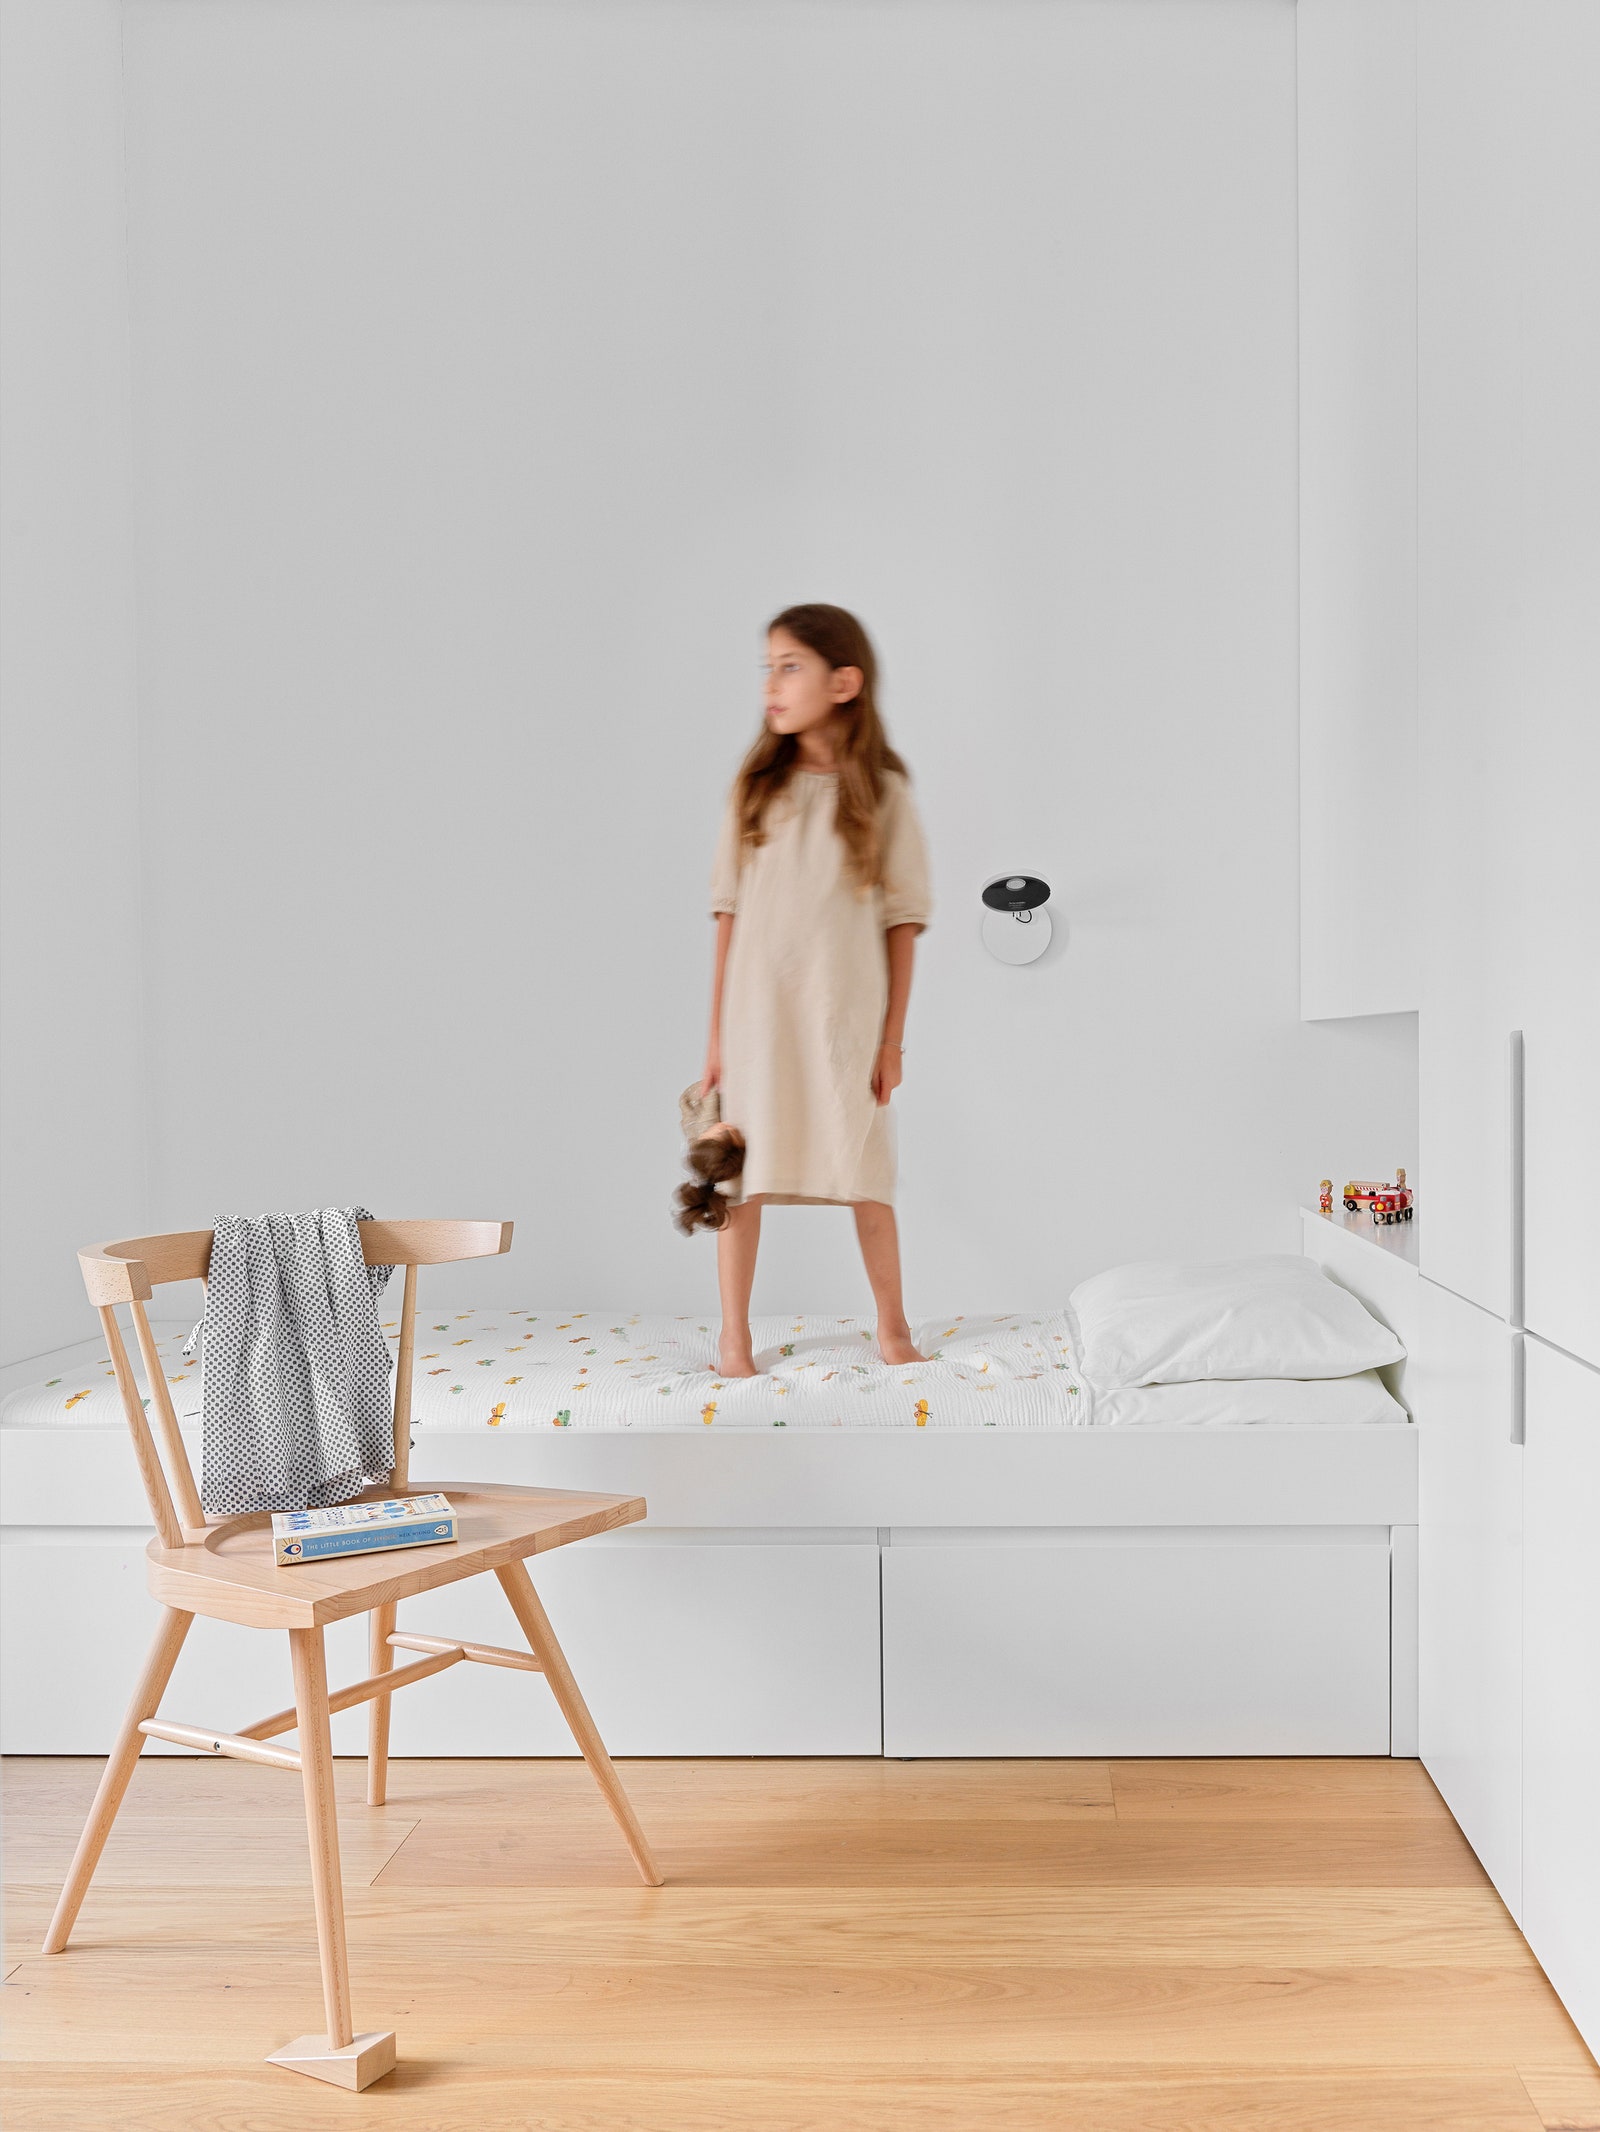 Детская. Кровать и шкафы сделаны по эскизам архитектора стул по дизайну Вирджила Абло для IKEA бра Artemide.